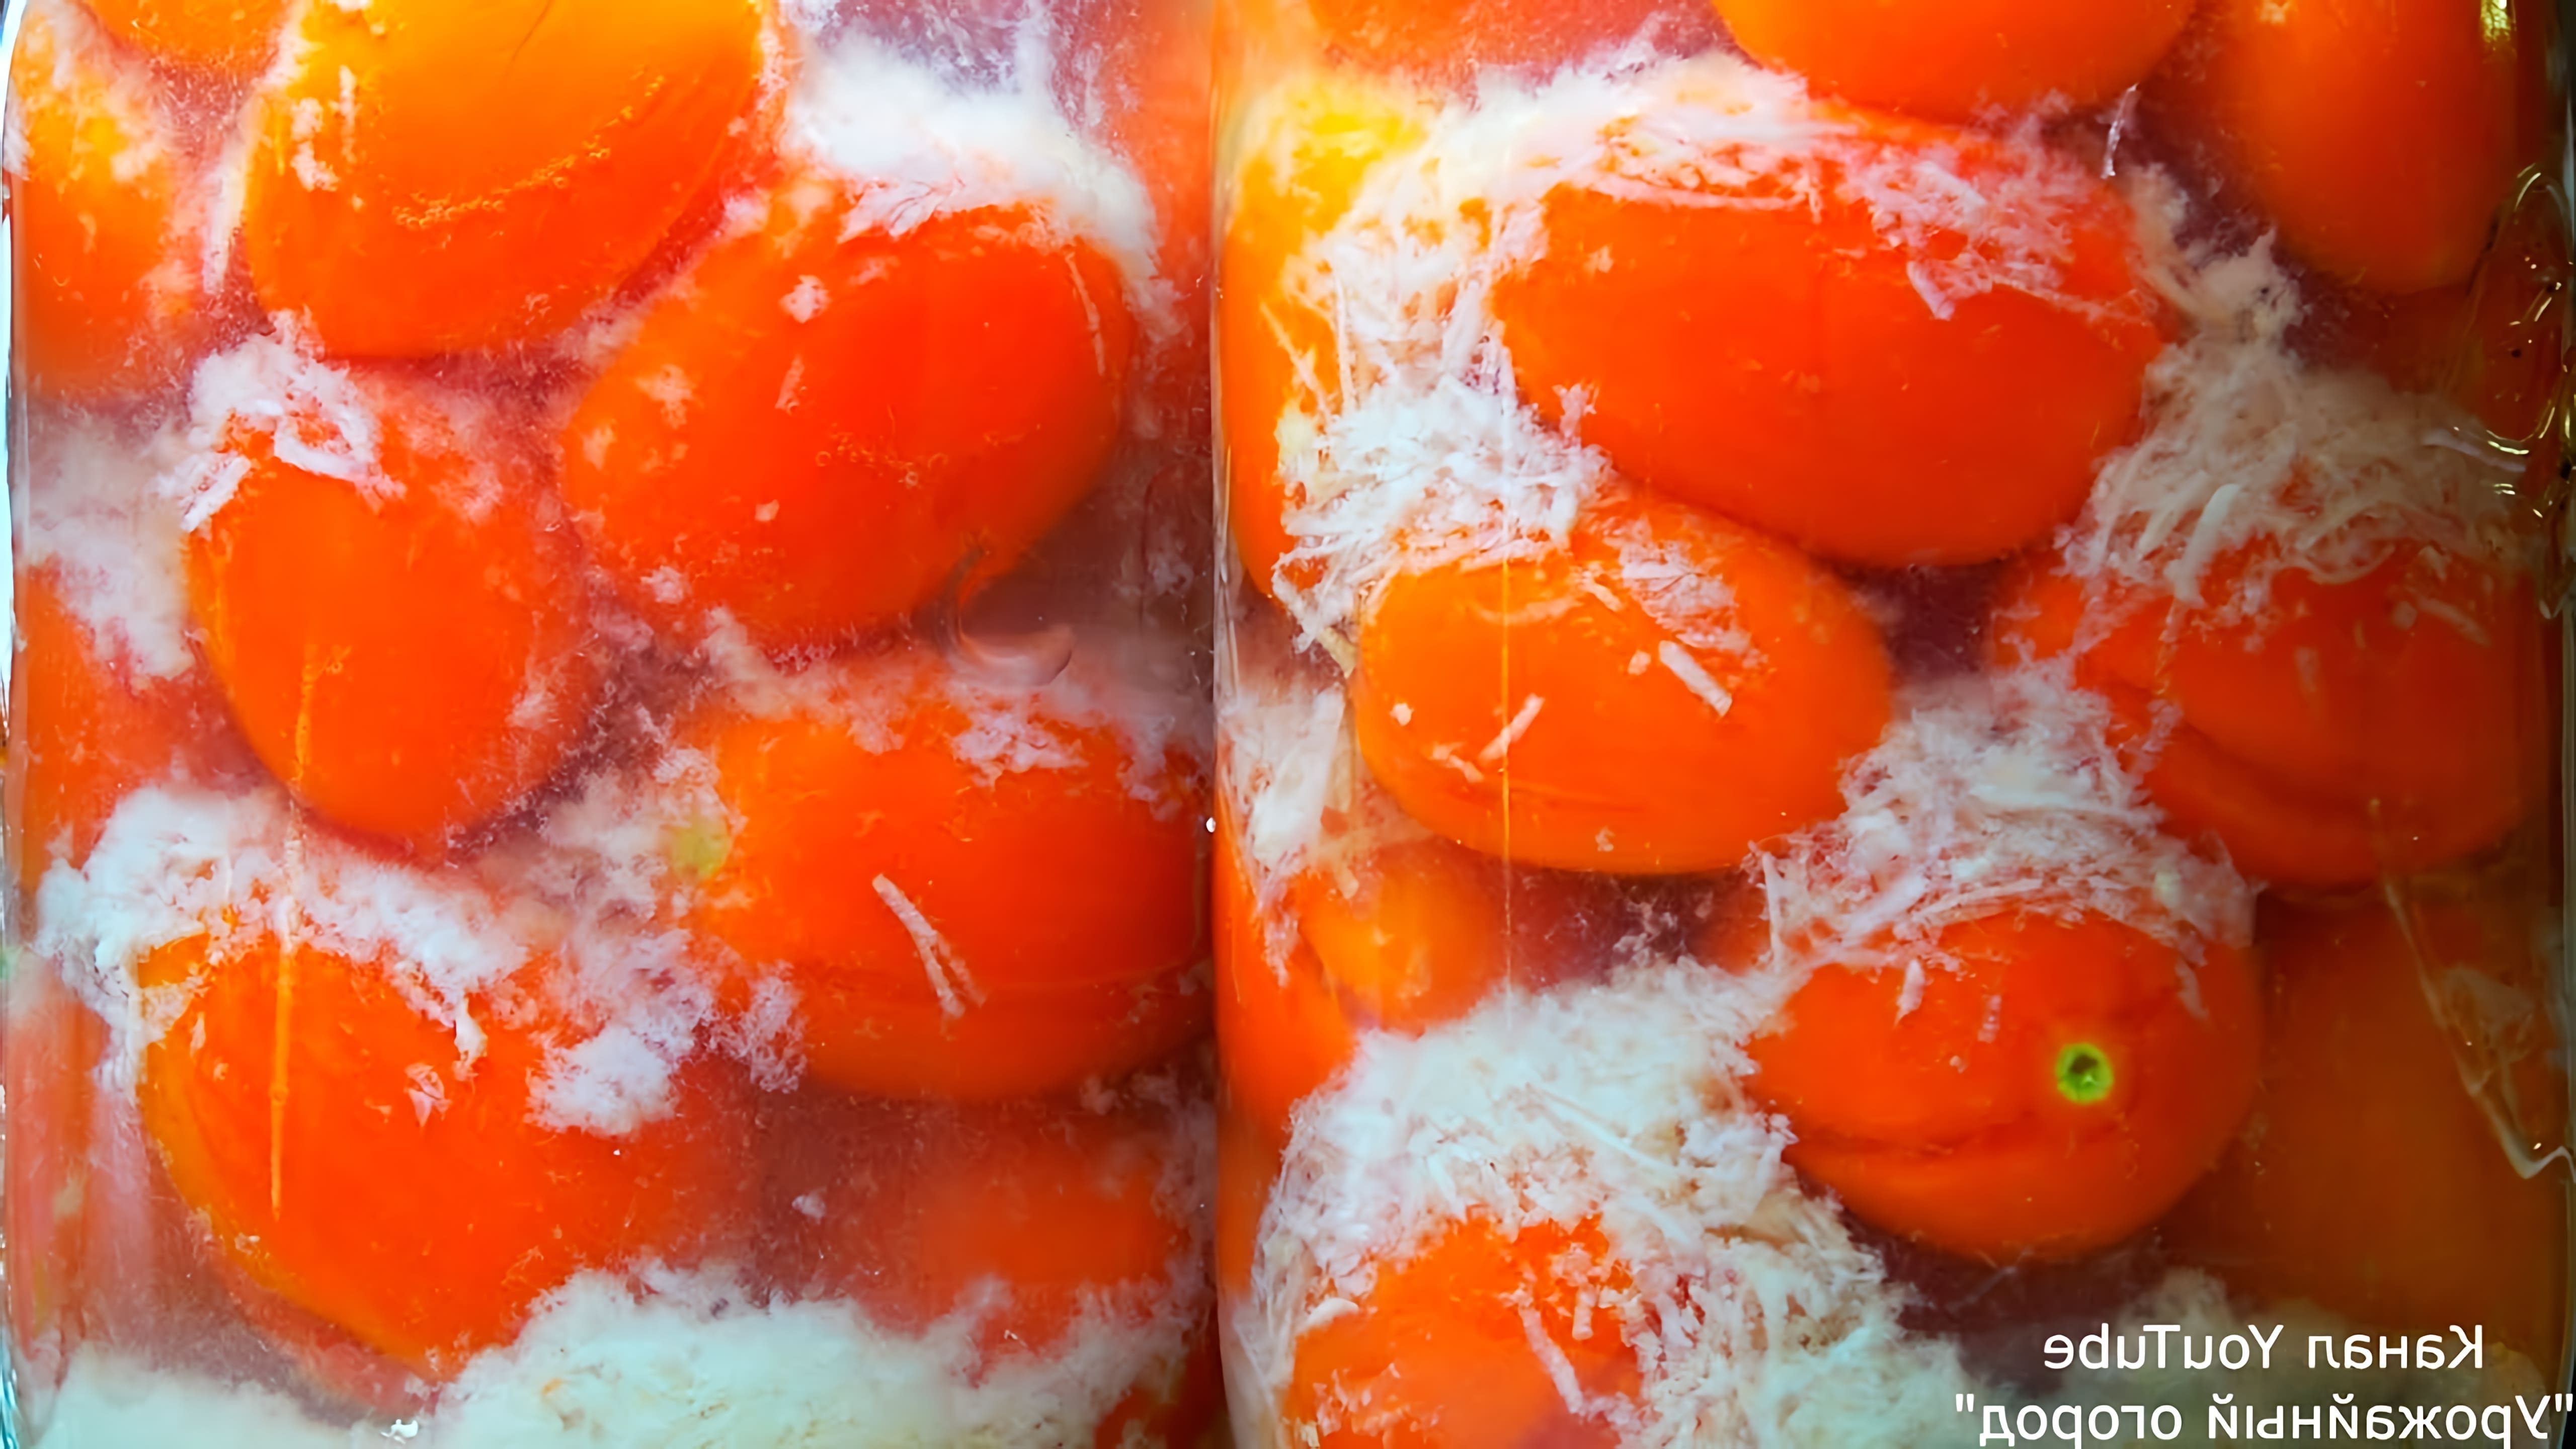 Видео демонстрирует рецепт консервирования помидоров в снегу, который включает упаковку помидоров и чеснока в банки, заливку горячим рассолом и хранение в прохладном месте